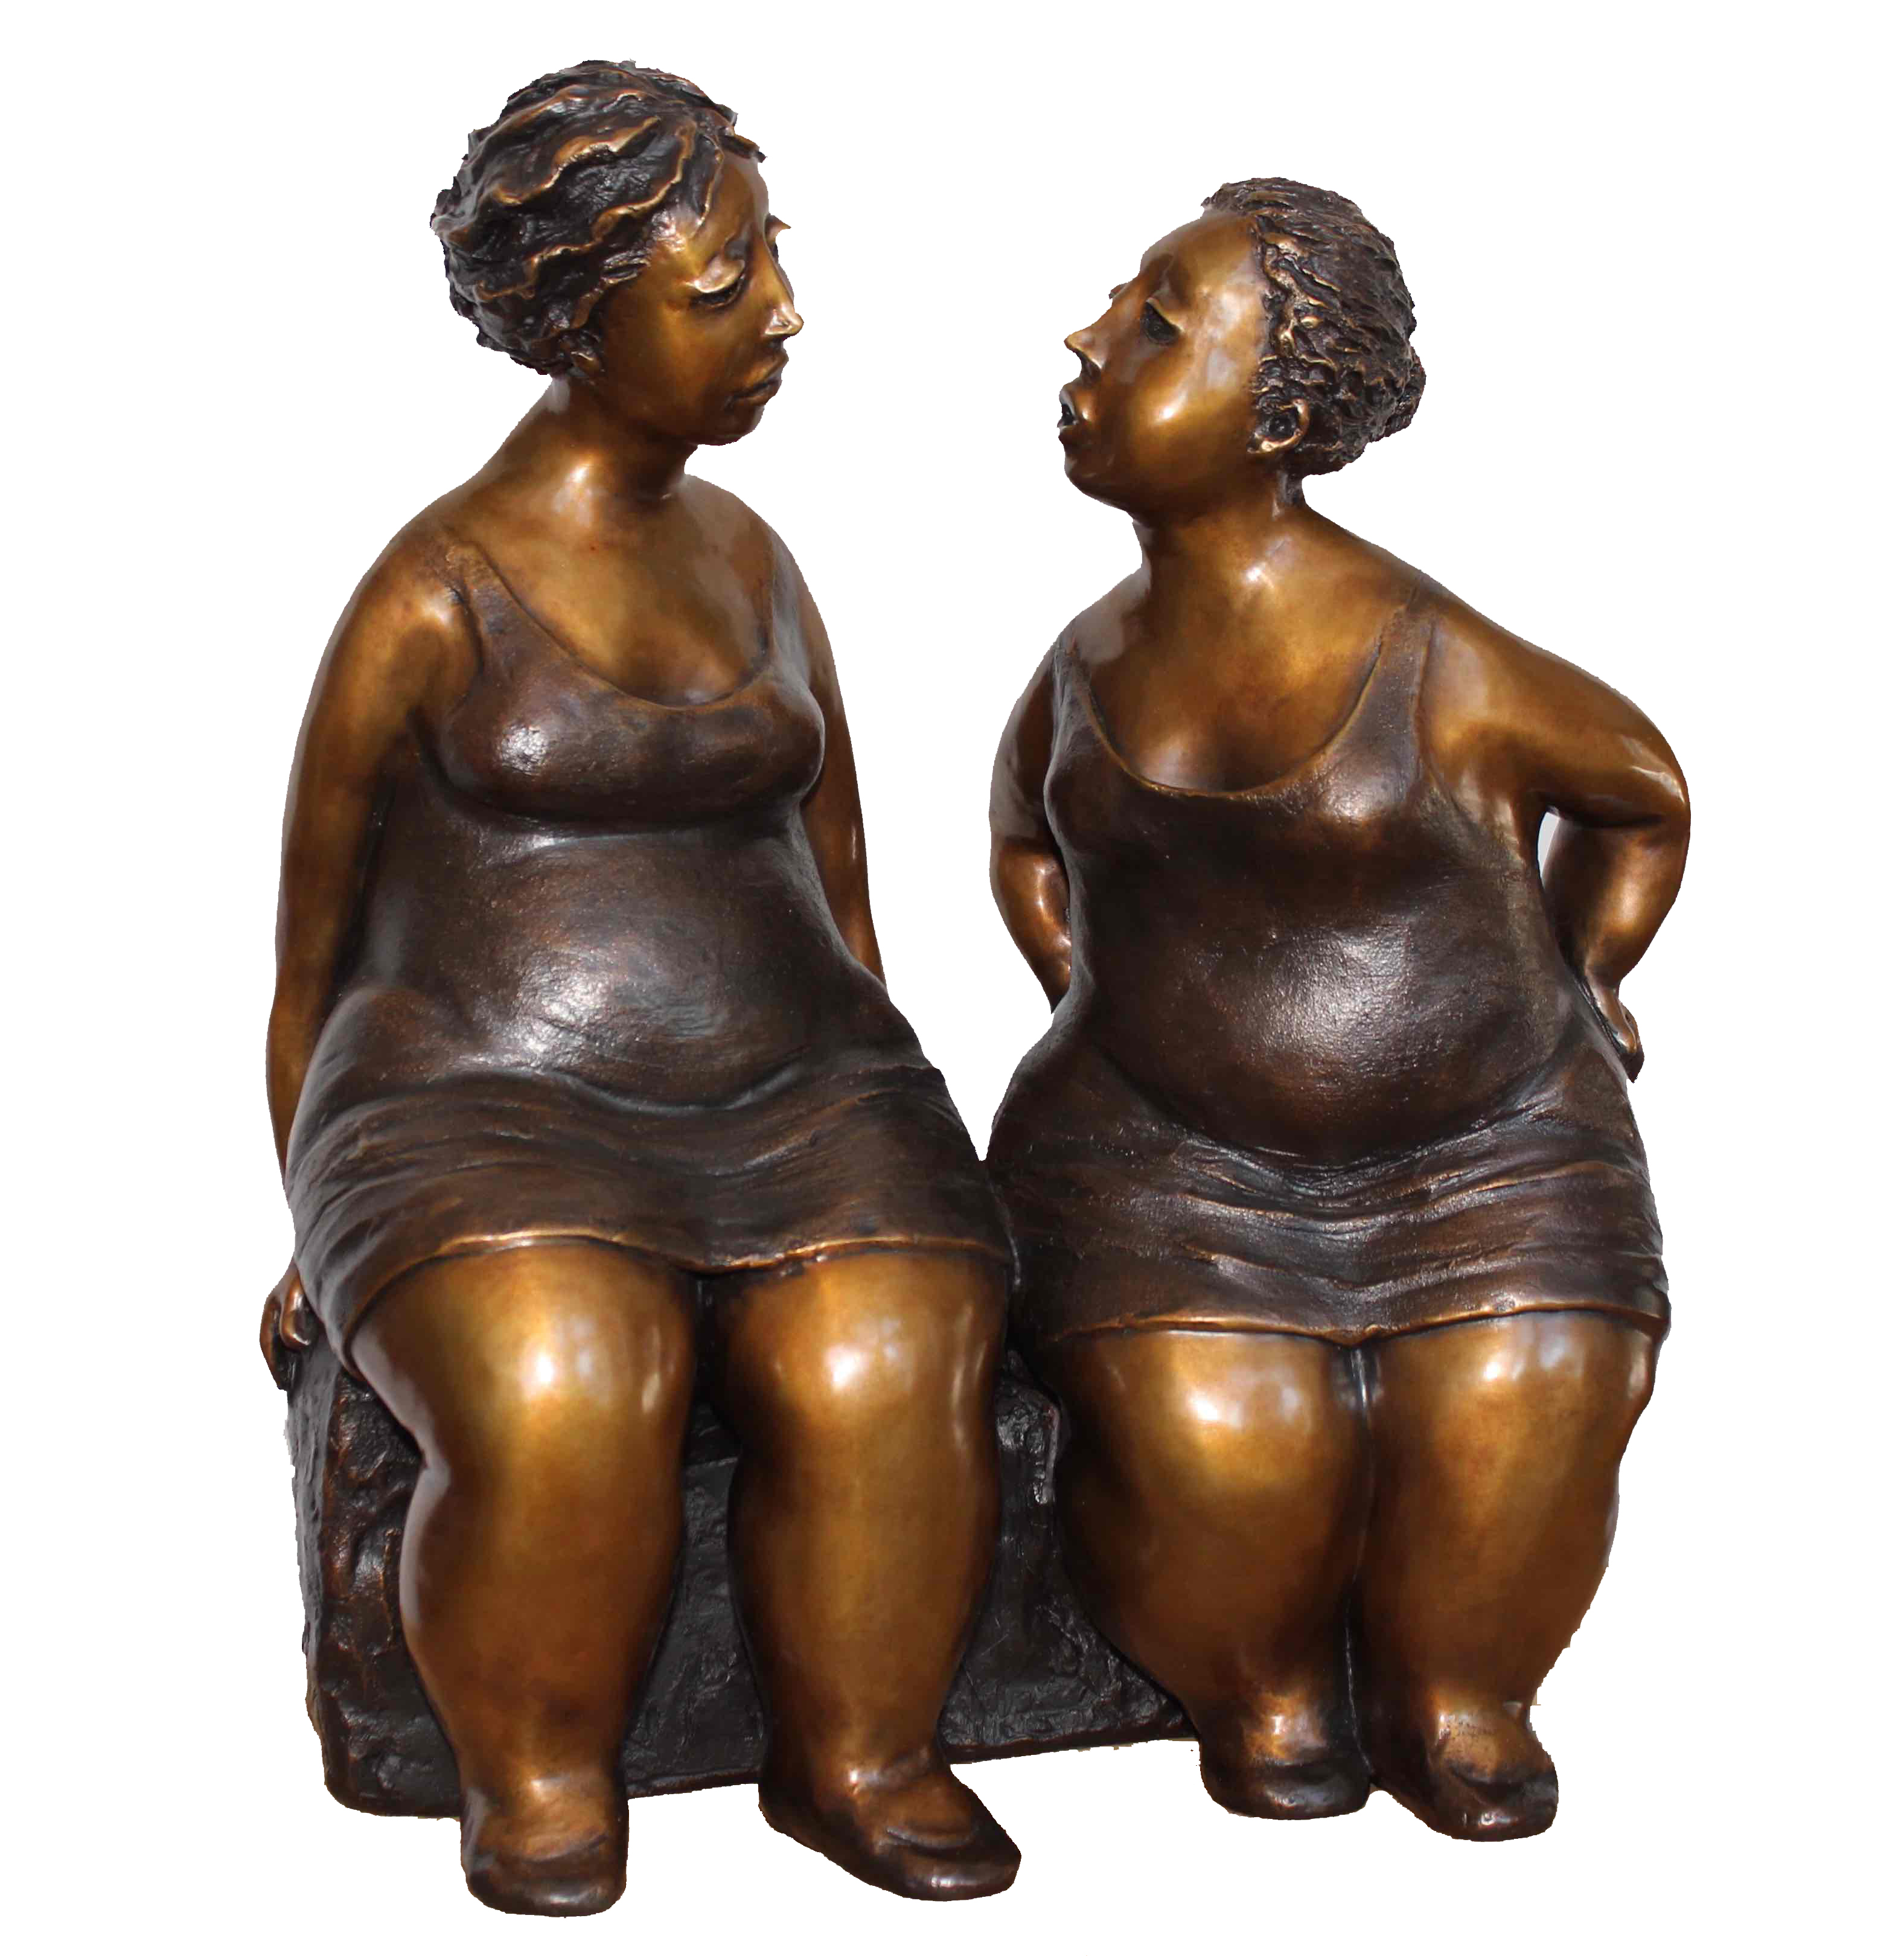 Sculpture de bronze de deux femmes par Rose-Aimée Bélanger à vendre en galerie d'art à Montréal. « Complicité » disponible à la Galerie Blanche.